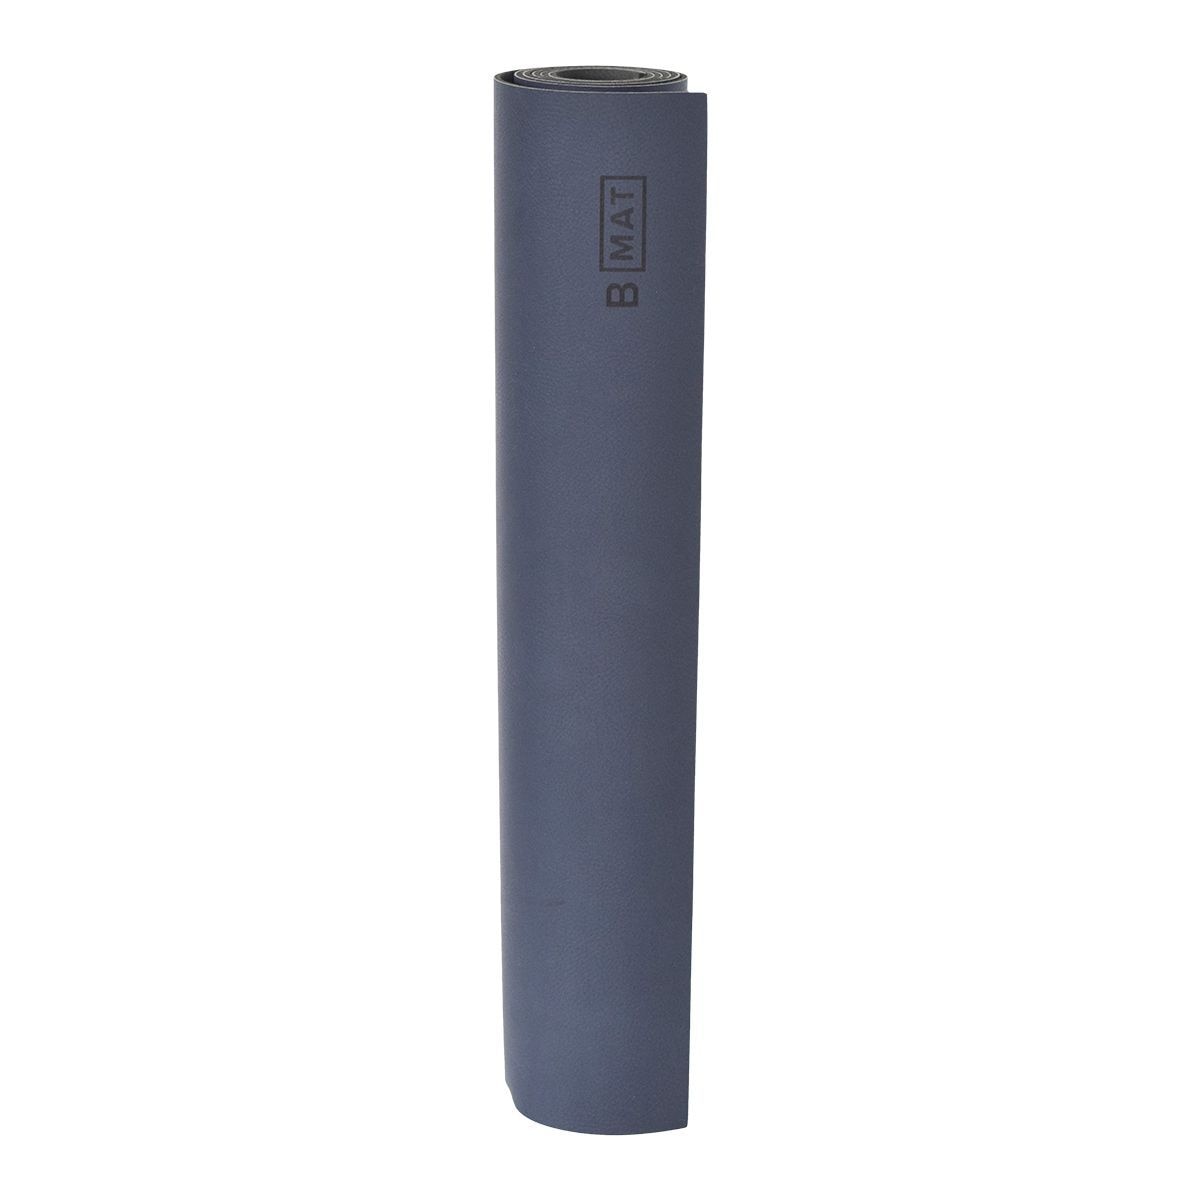 B Yoga B MAT Luxe Yoga Mat  4mm  Vegan Leather  Optimal Grip